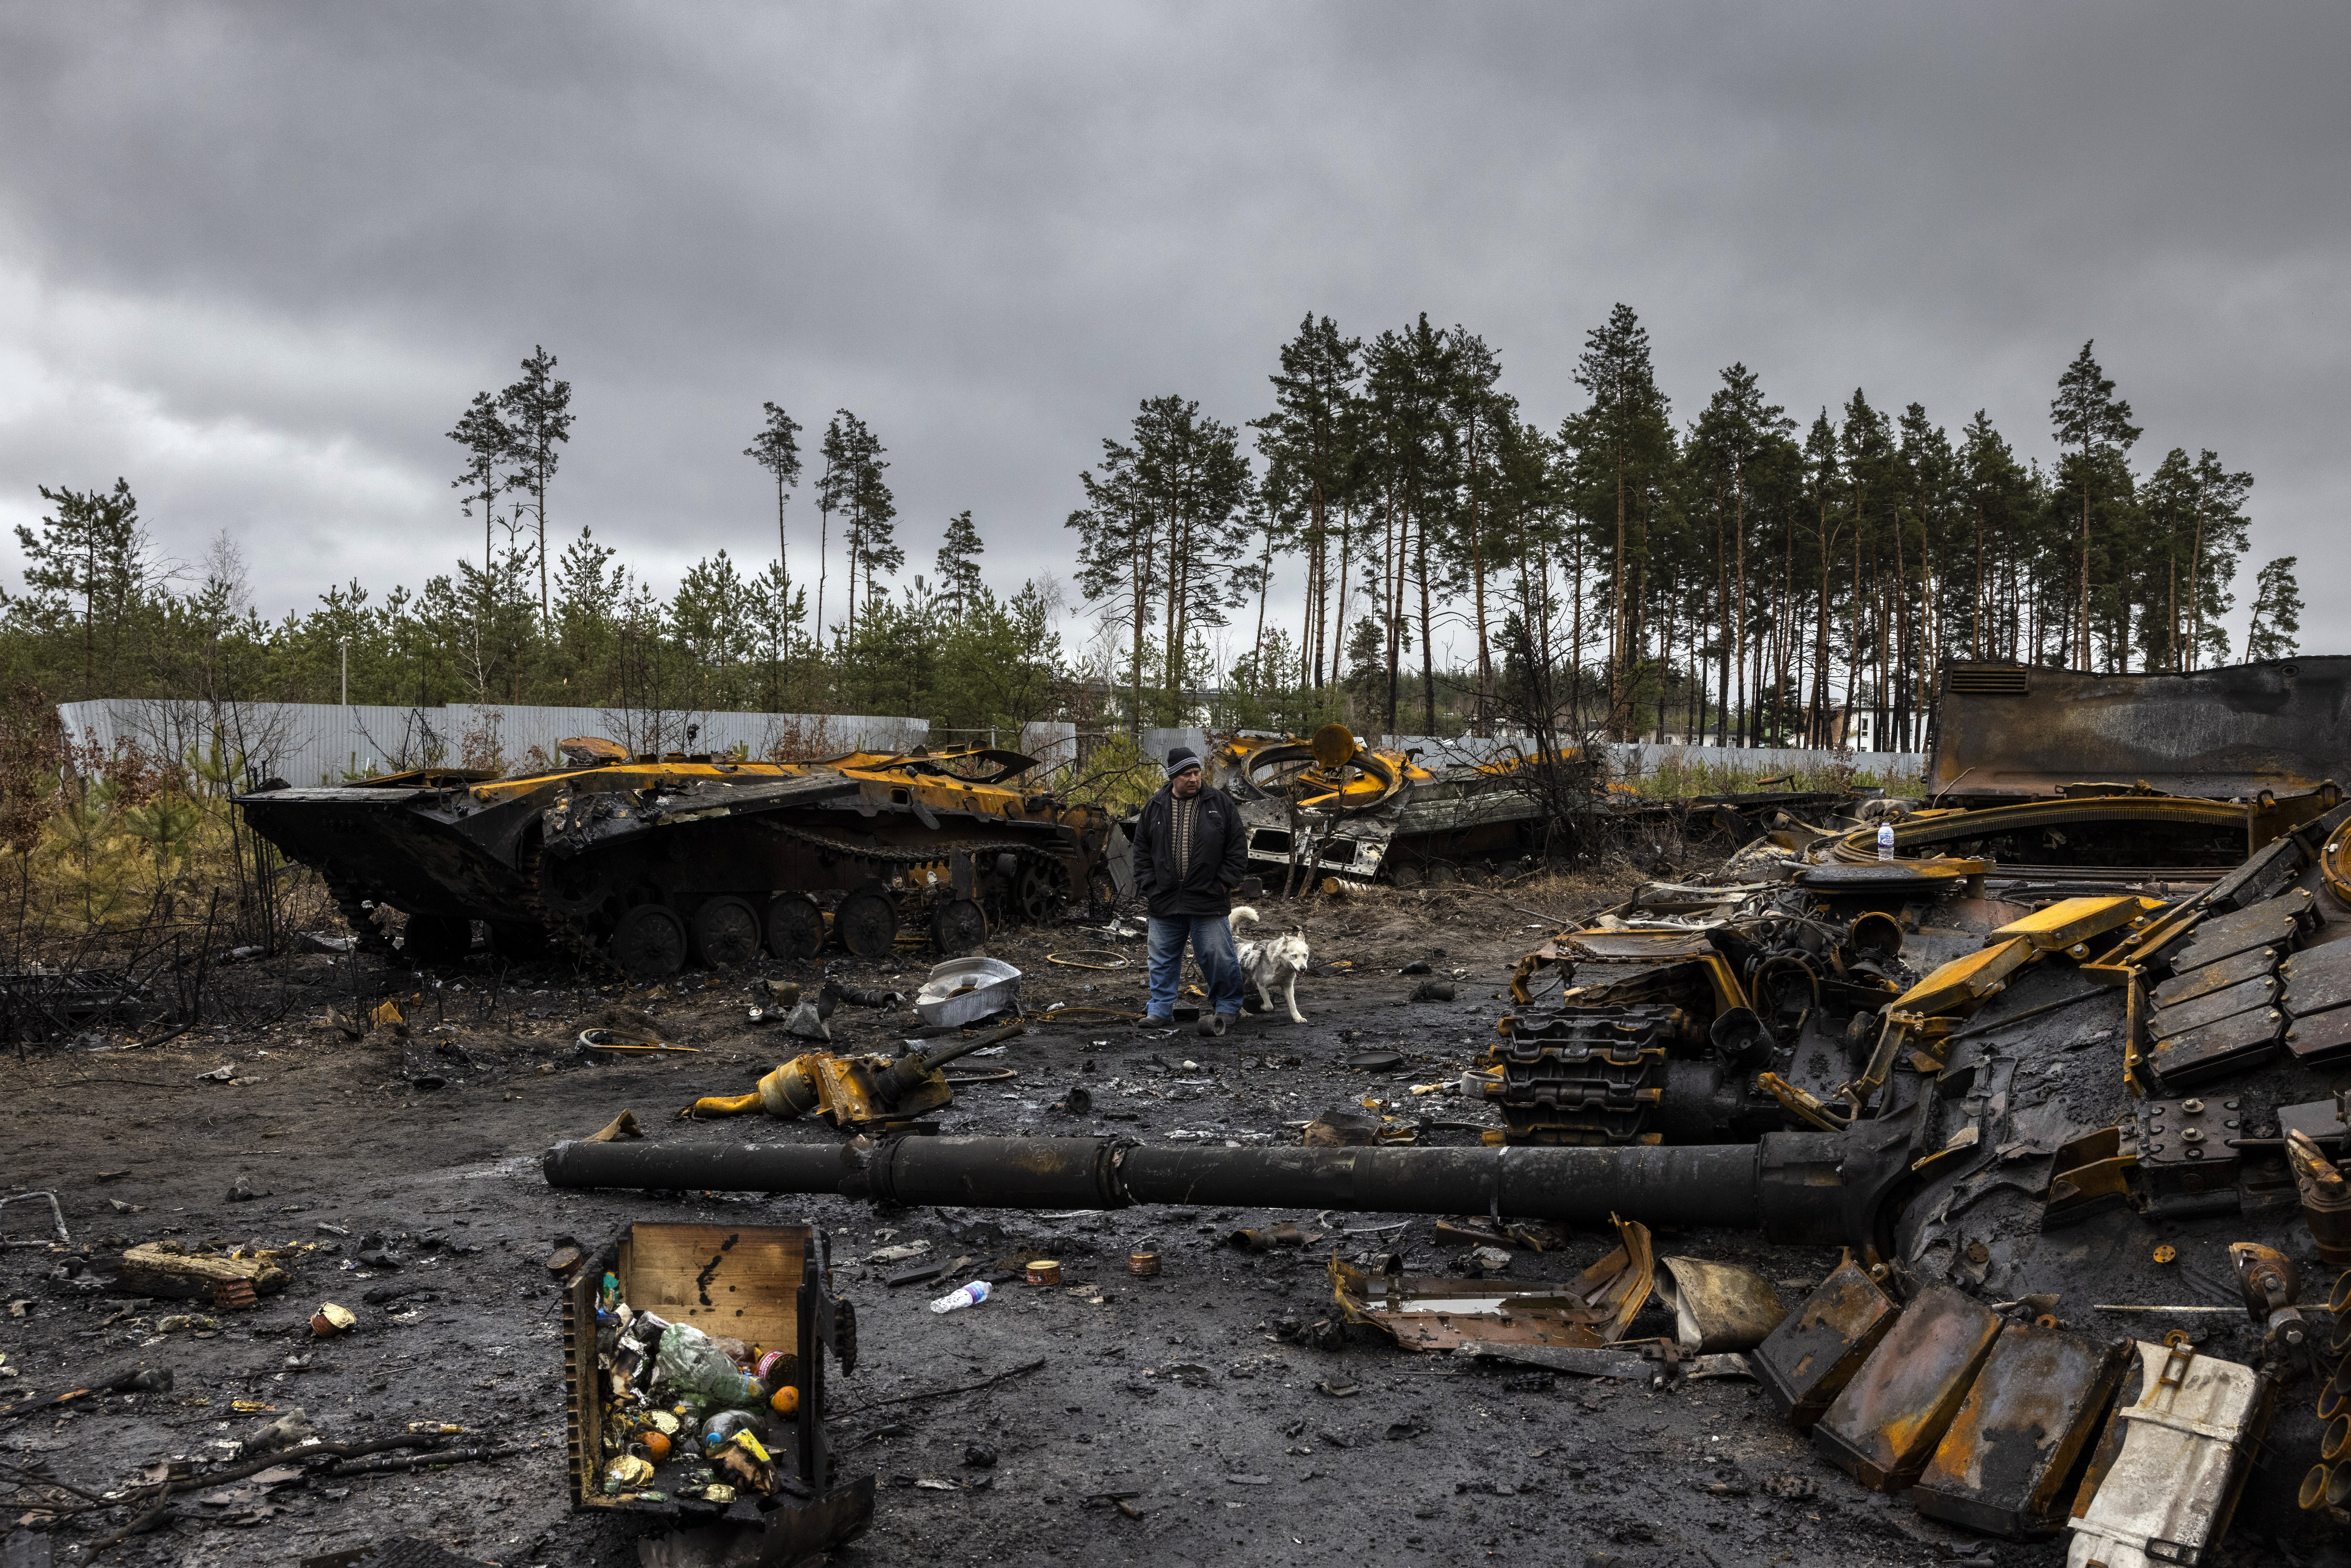 Los restos quemados de hasta nueve tanques rusos y vehículos blindados de combate a lo largo de un camino a la salida del pueblo de Dmytrivka, Ucrania, el 2 de abril de 2022. (Foto Prensa Libre: Ivor Prickett/The New York Times)